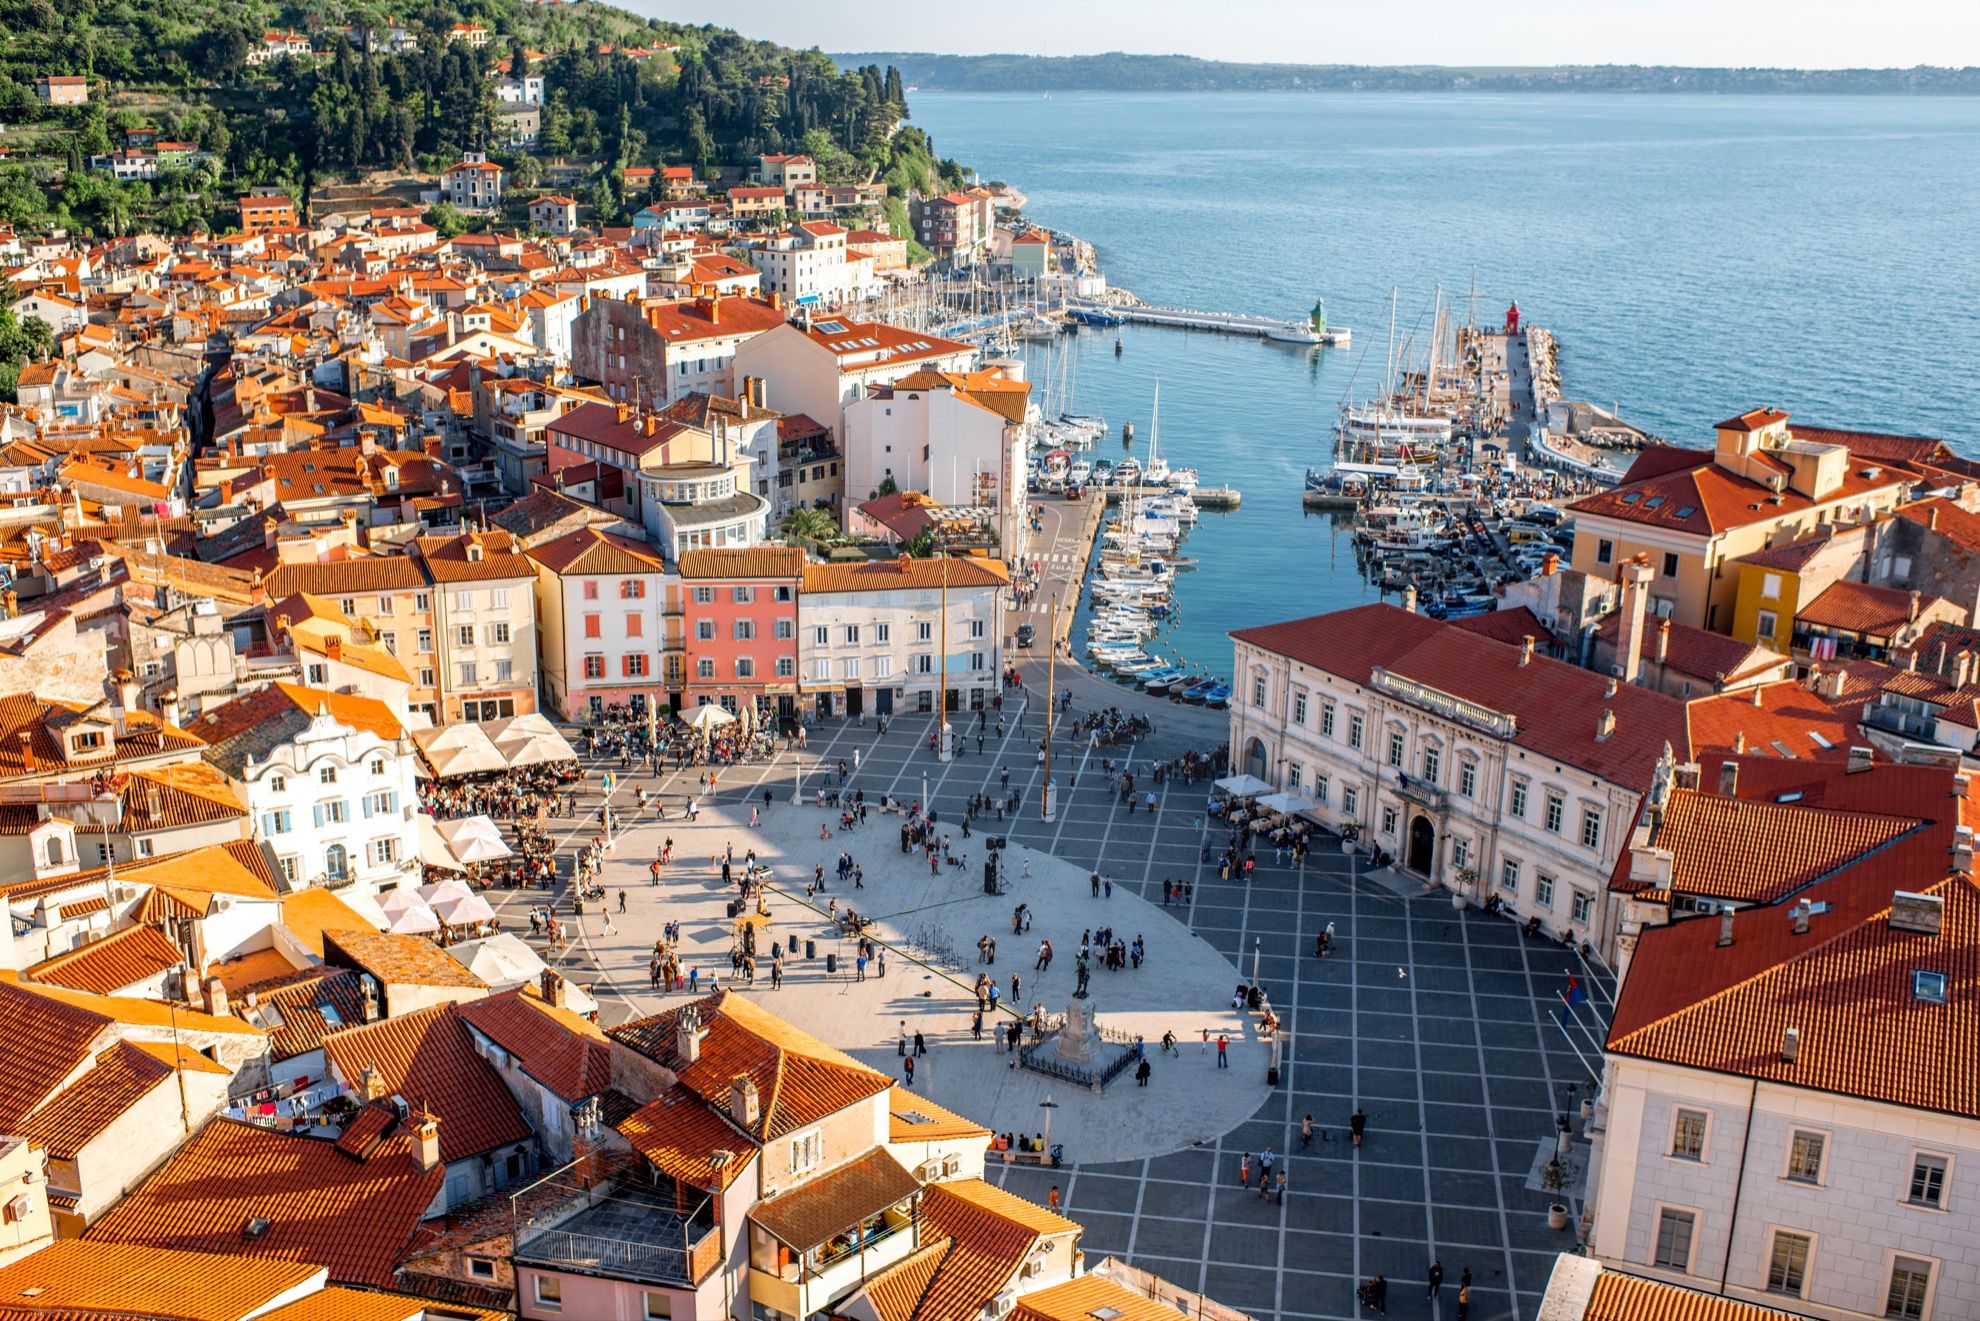 7 Datos rápidos sobre Piran, la hermosa ciudad costera de Eslovenia - 3